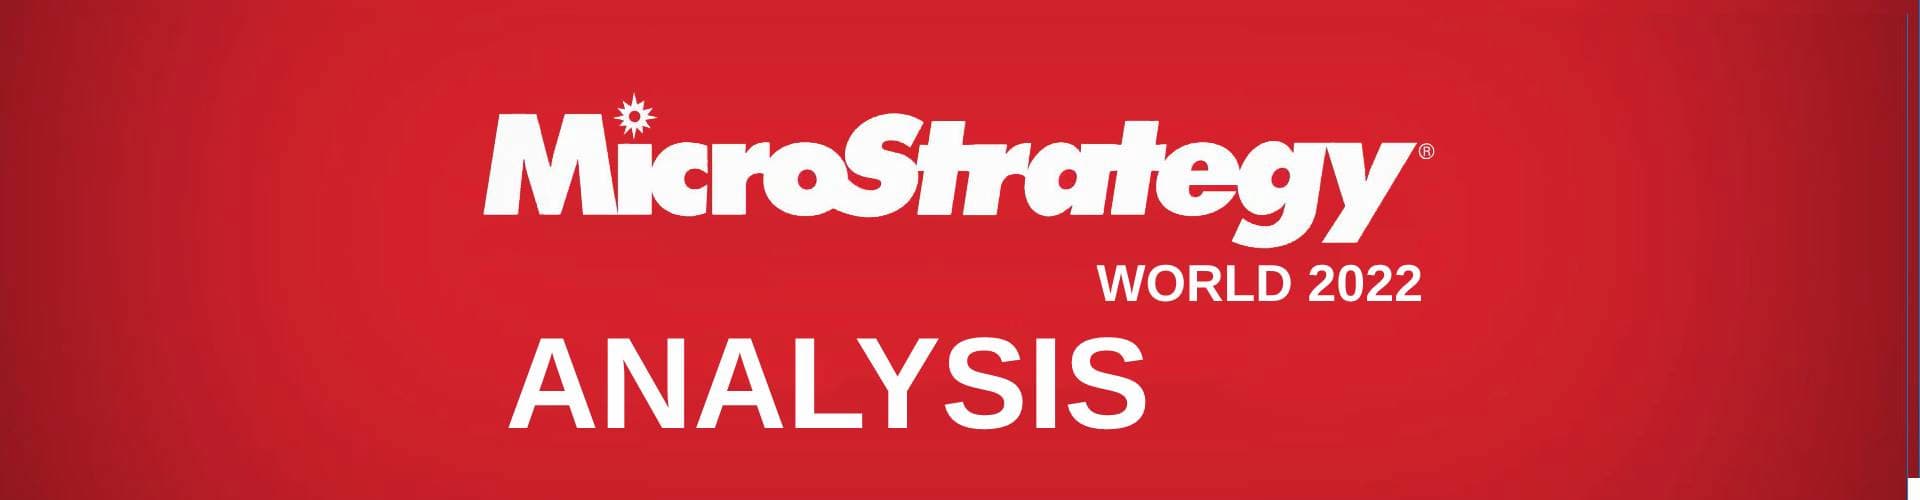 MicroStrategy-world-2022-analysis